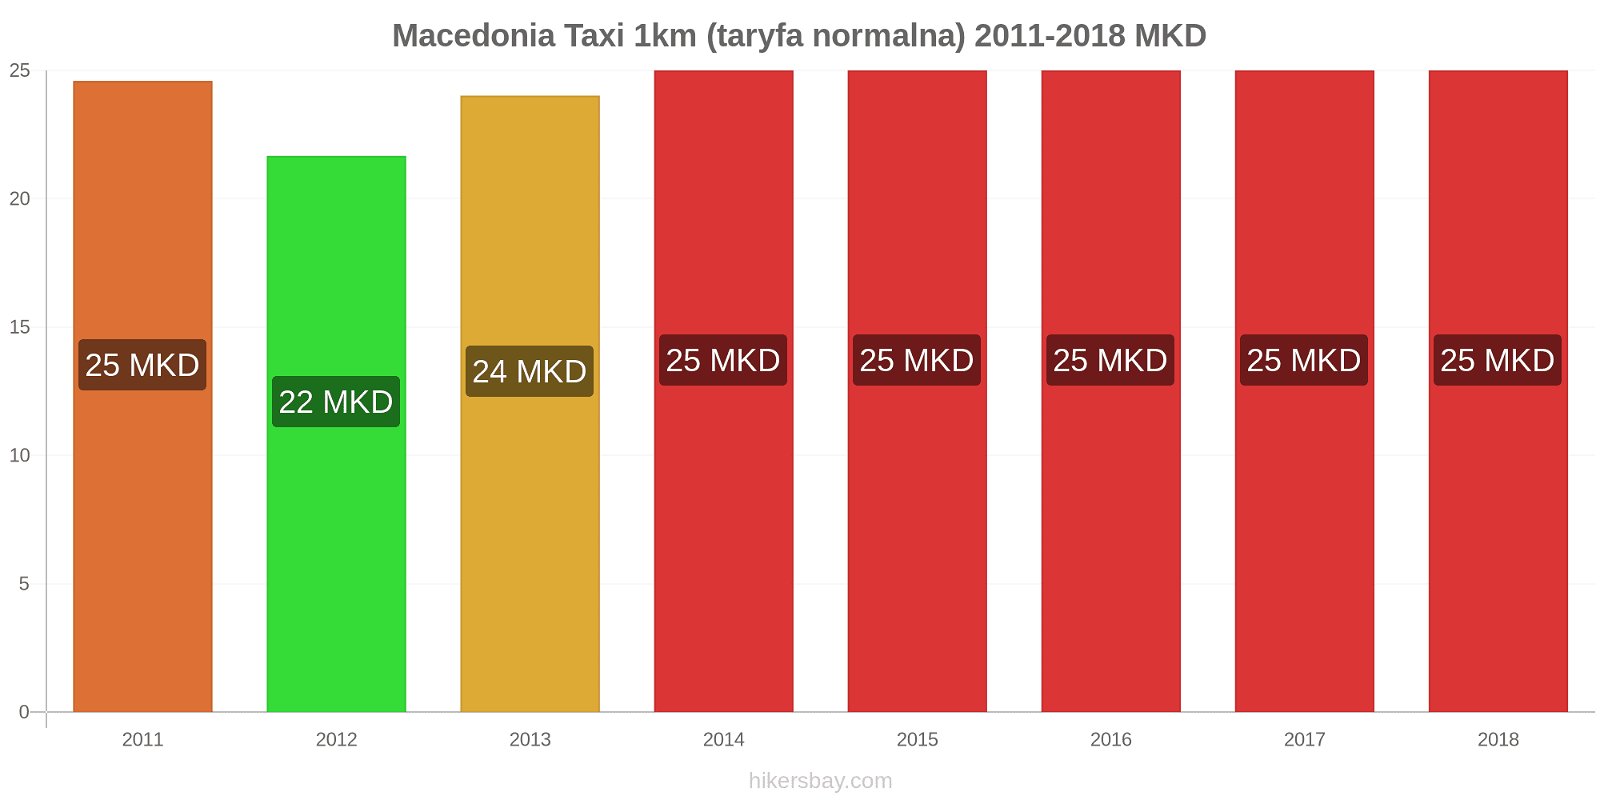 Macedonia zmiany cen Taxi 1km (taryfa normalna) hikersbay.com